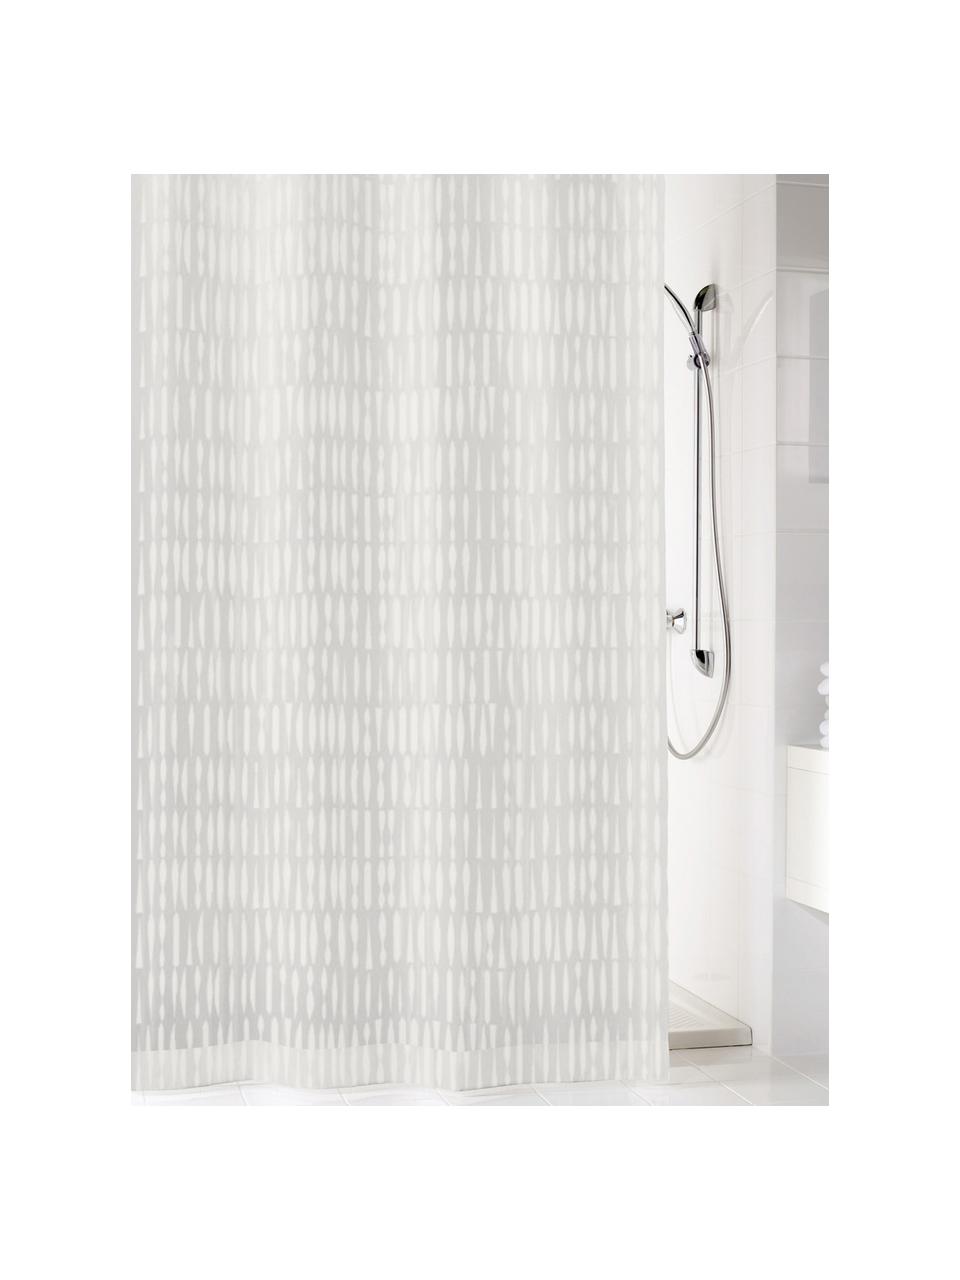 Zasłona prysznicowa Zora, Eko tworzywo sztuczne (PEVA), bez PVC
Produkt wodoodporny, Biały, transparentny, S 180 x D 200 cm